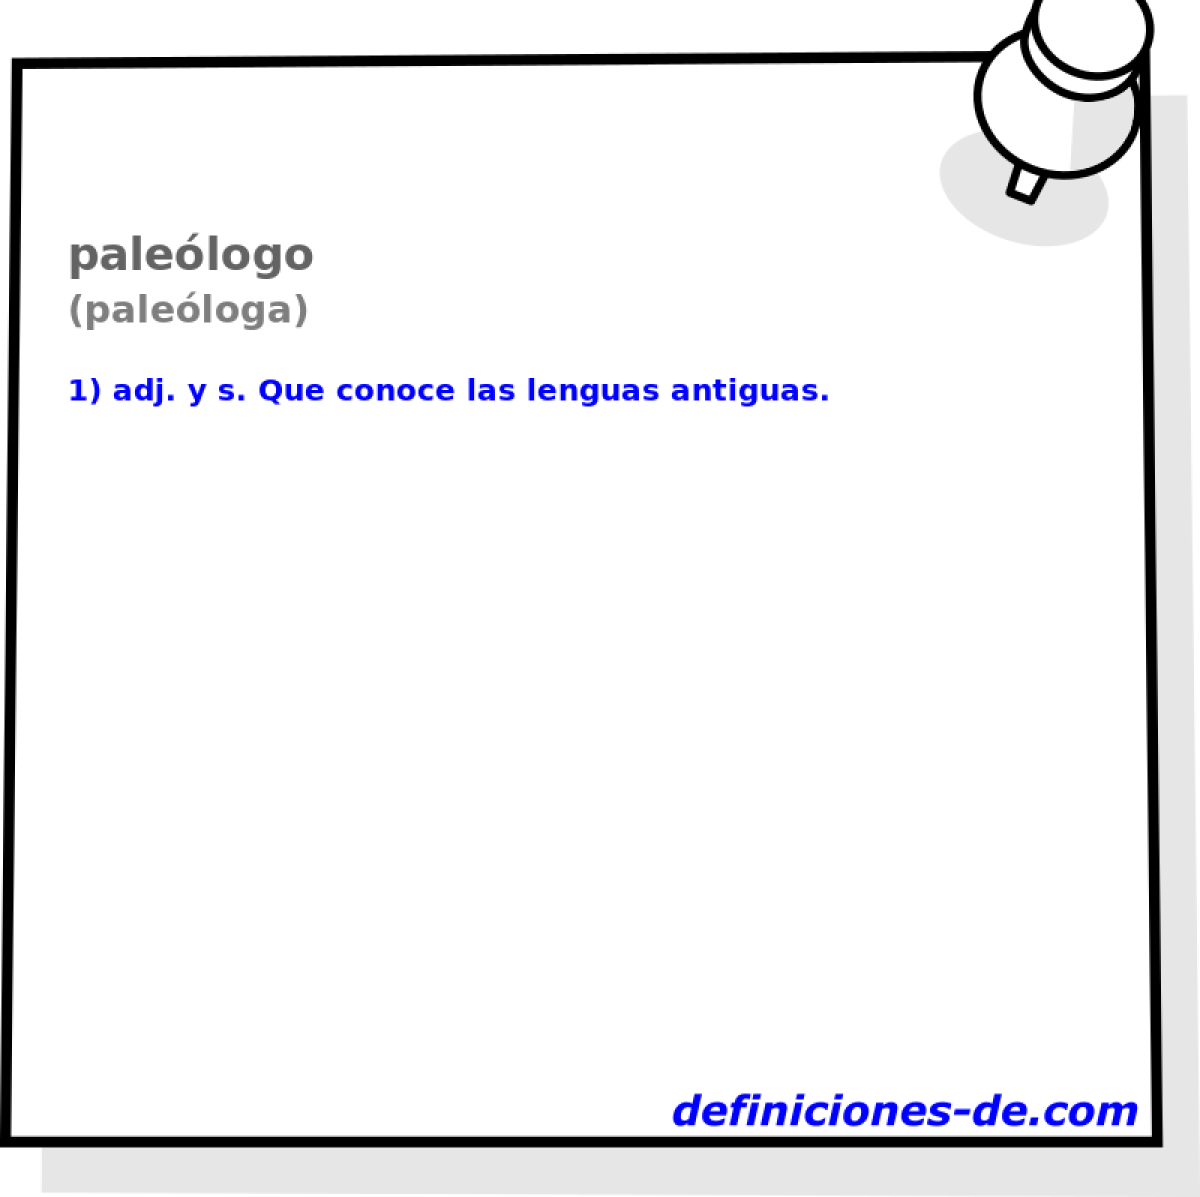 palelogo (paleloga)